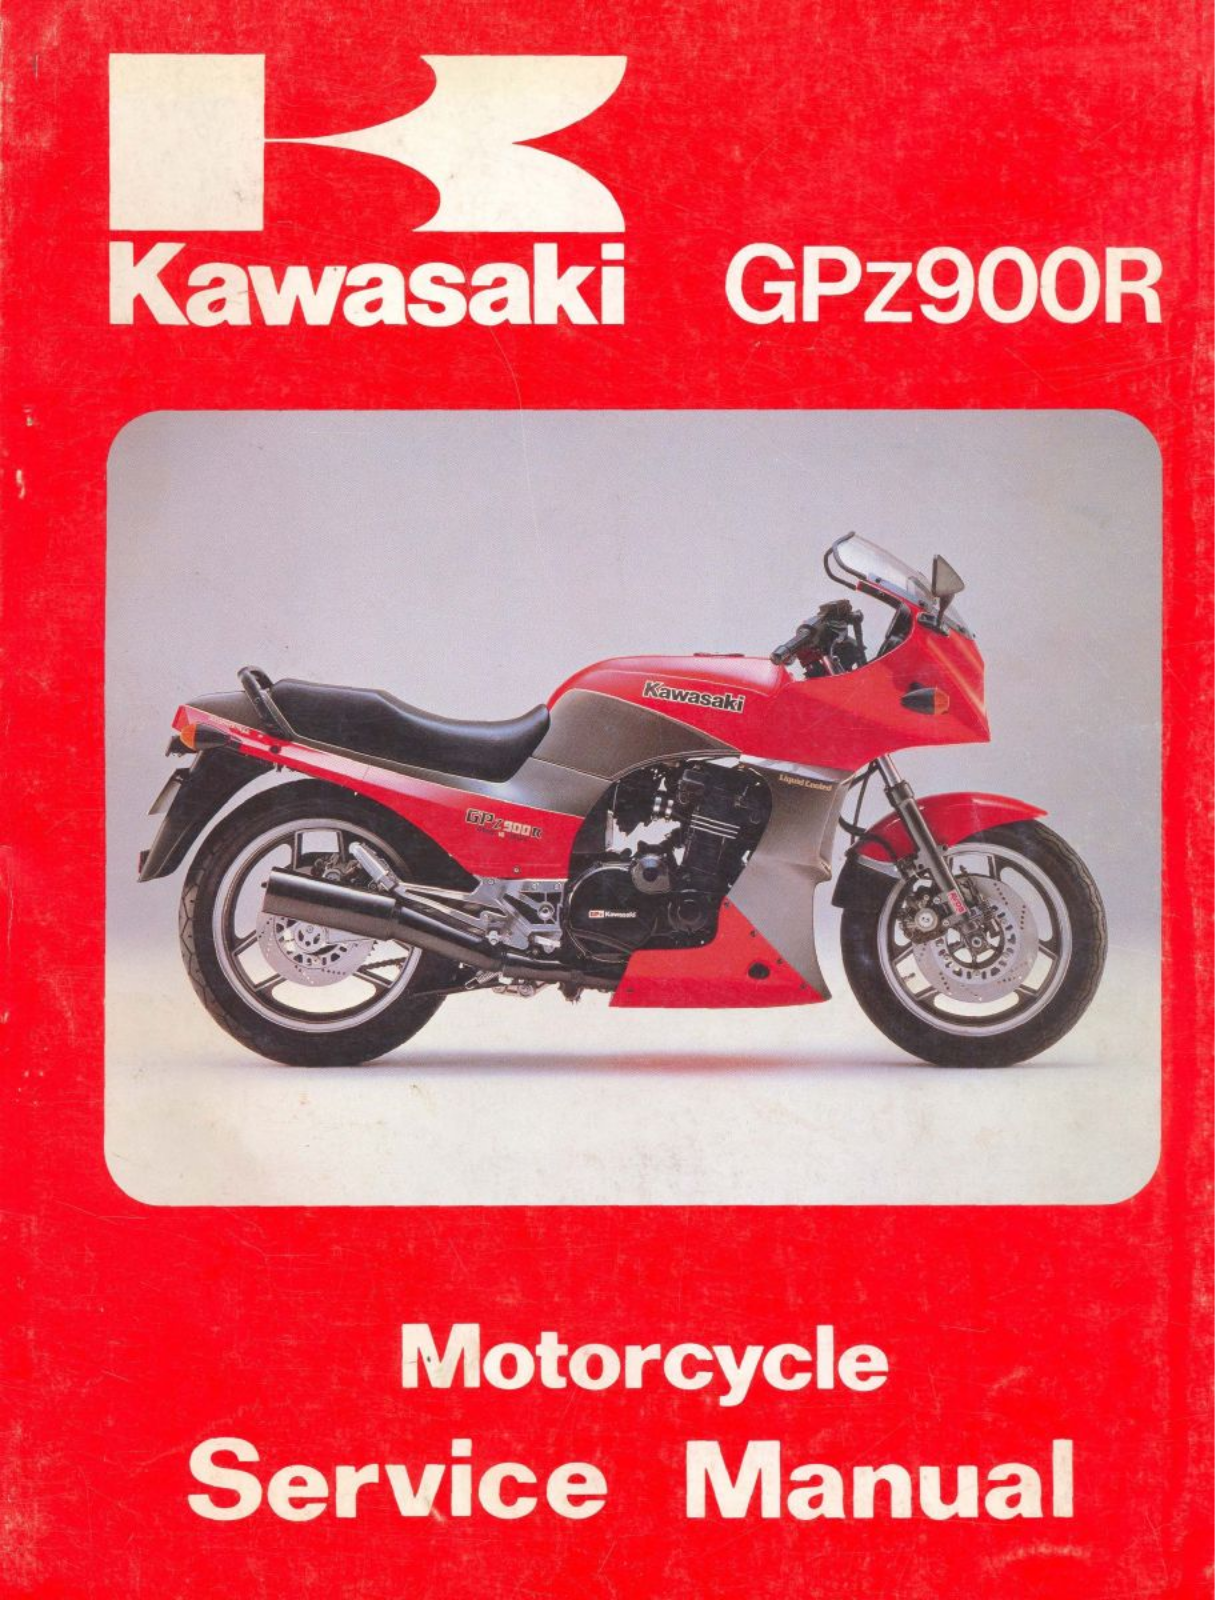 Kawasaki GPz900R 1984-1985 Service Manual